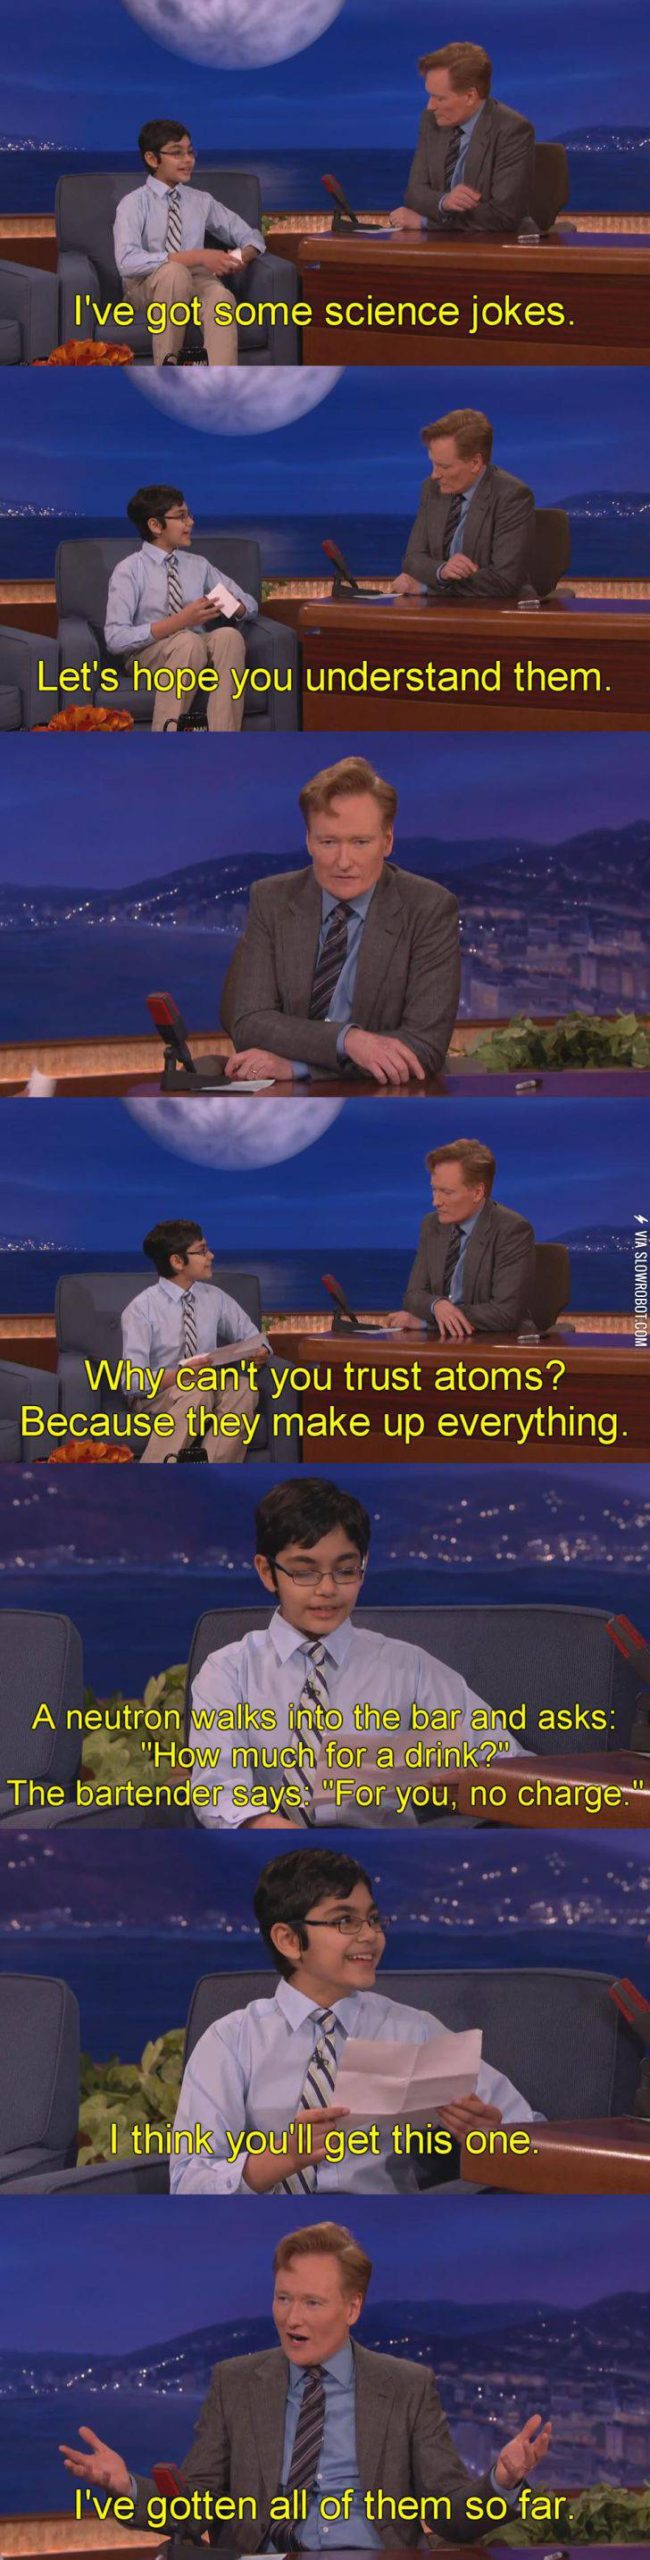 Conan+knows+science.